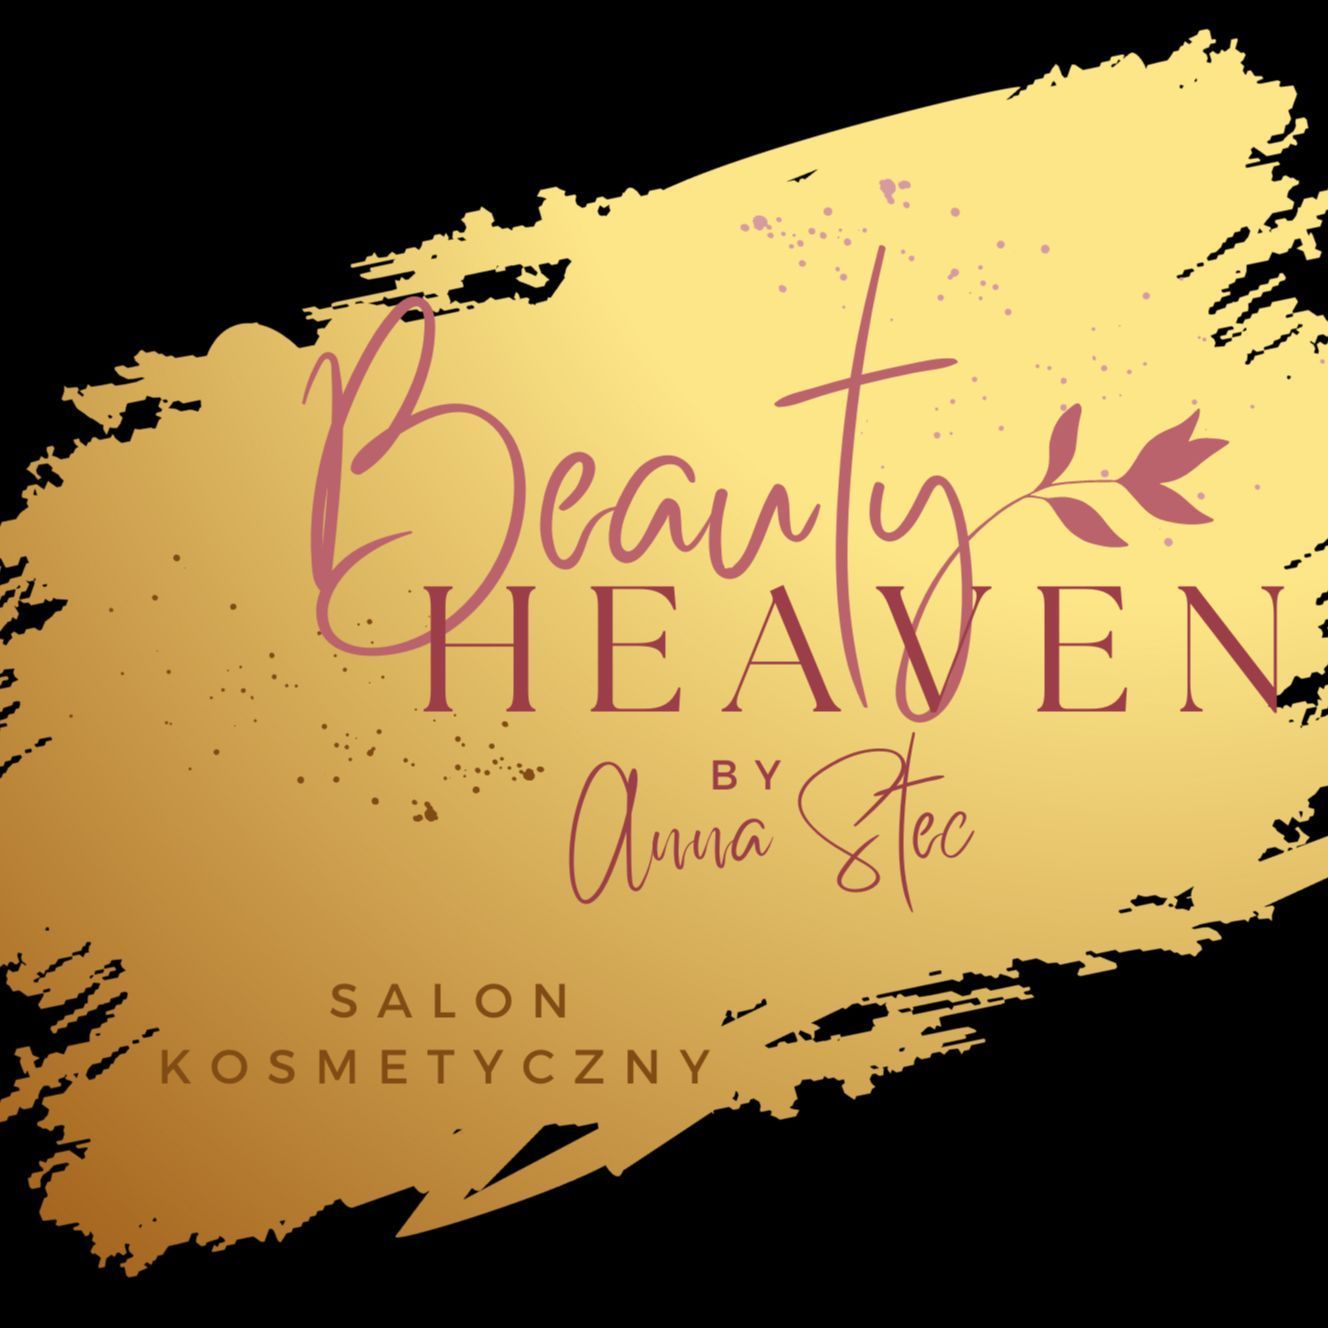 Beauty Heaven by Anna Stec salon kosmetyczny, Czerniec 203, 33-390, Łącko